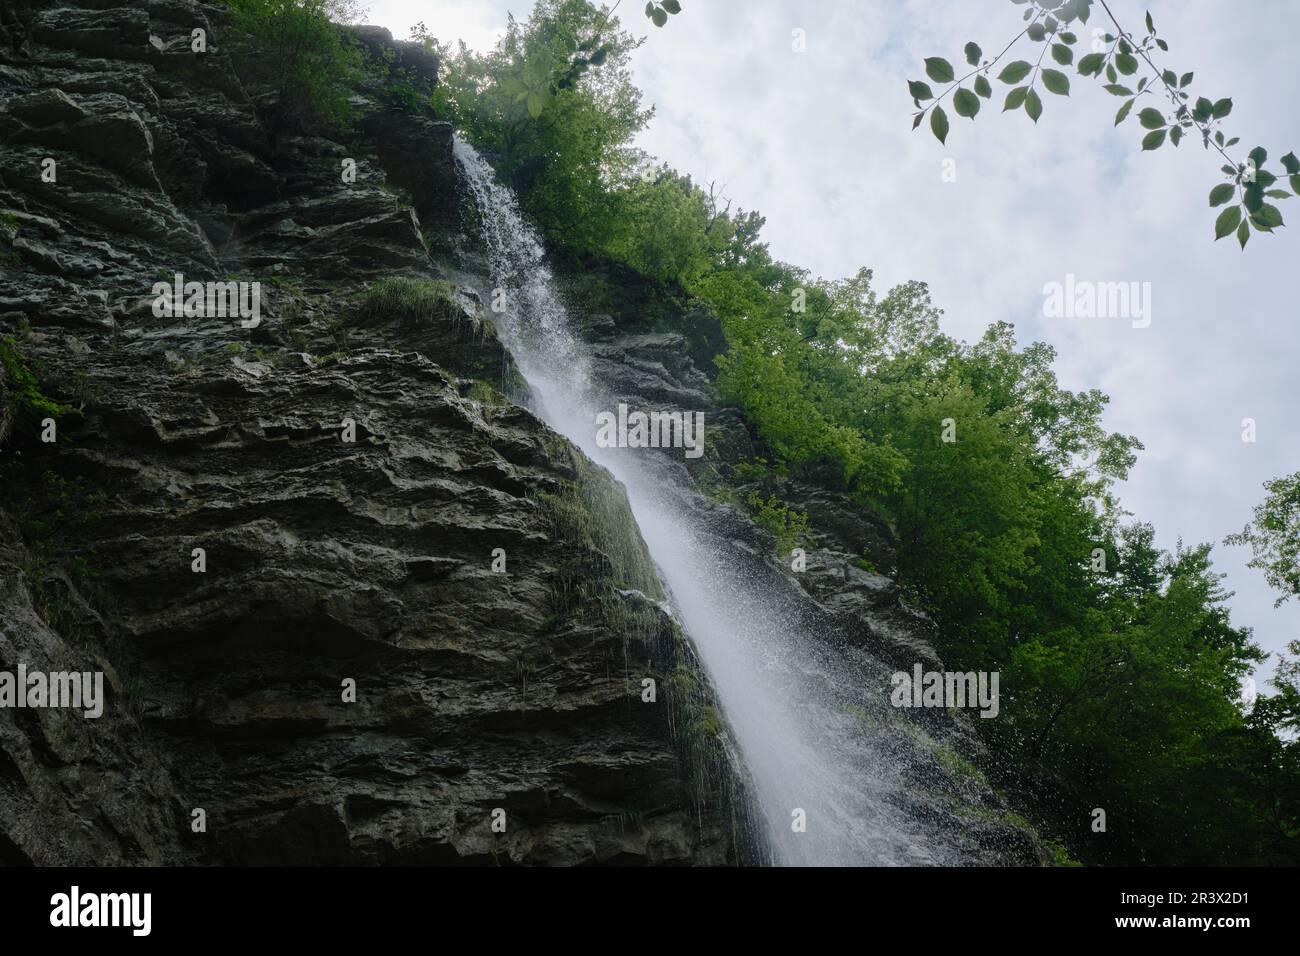 Wasserfall. Wasser fließt über die Felsen im Berg. Perun-Wasserfall in der Schlucht des Tuapse-Viertels von Krasnodar Krai im Süden Russlands. R Stockfoto